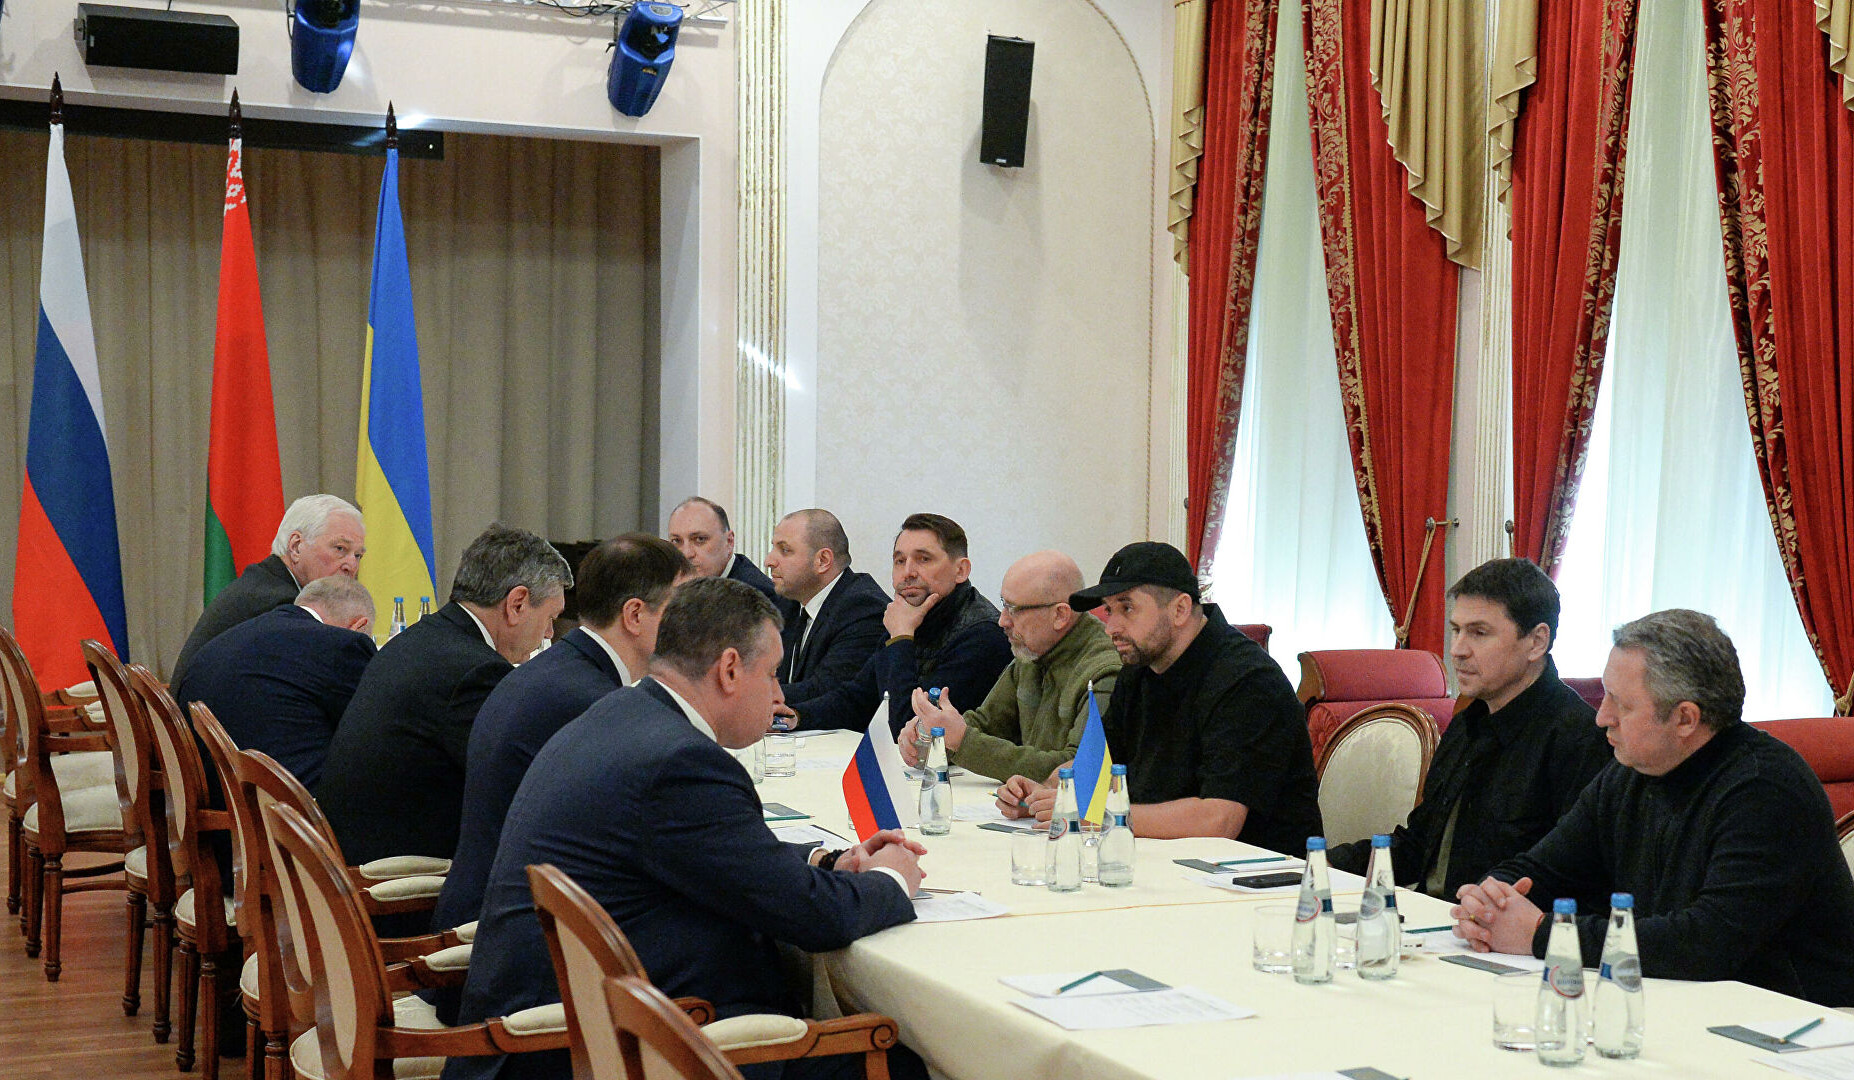 Ռուսաստանի և Ուկրաինայի պատվիրակությունների բանակցություններն ավարտվել են. հաջորդ հանդիպումը կկայանա Բելառուս-Լեհաստան սահմանին